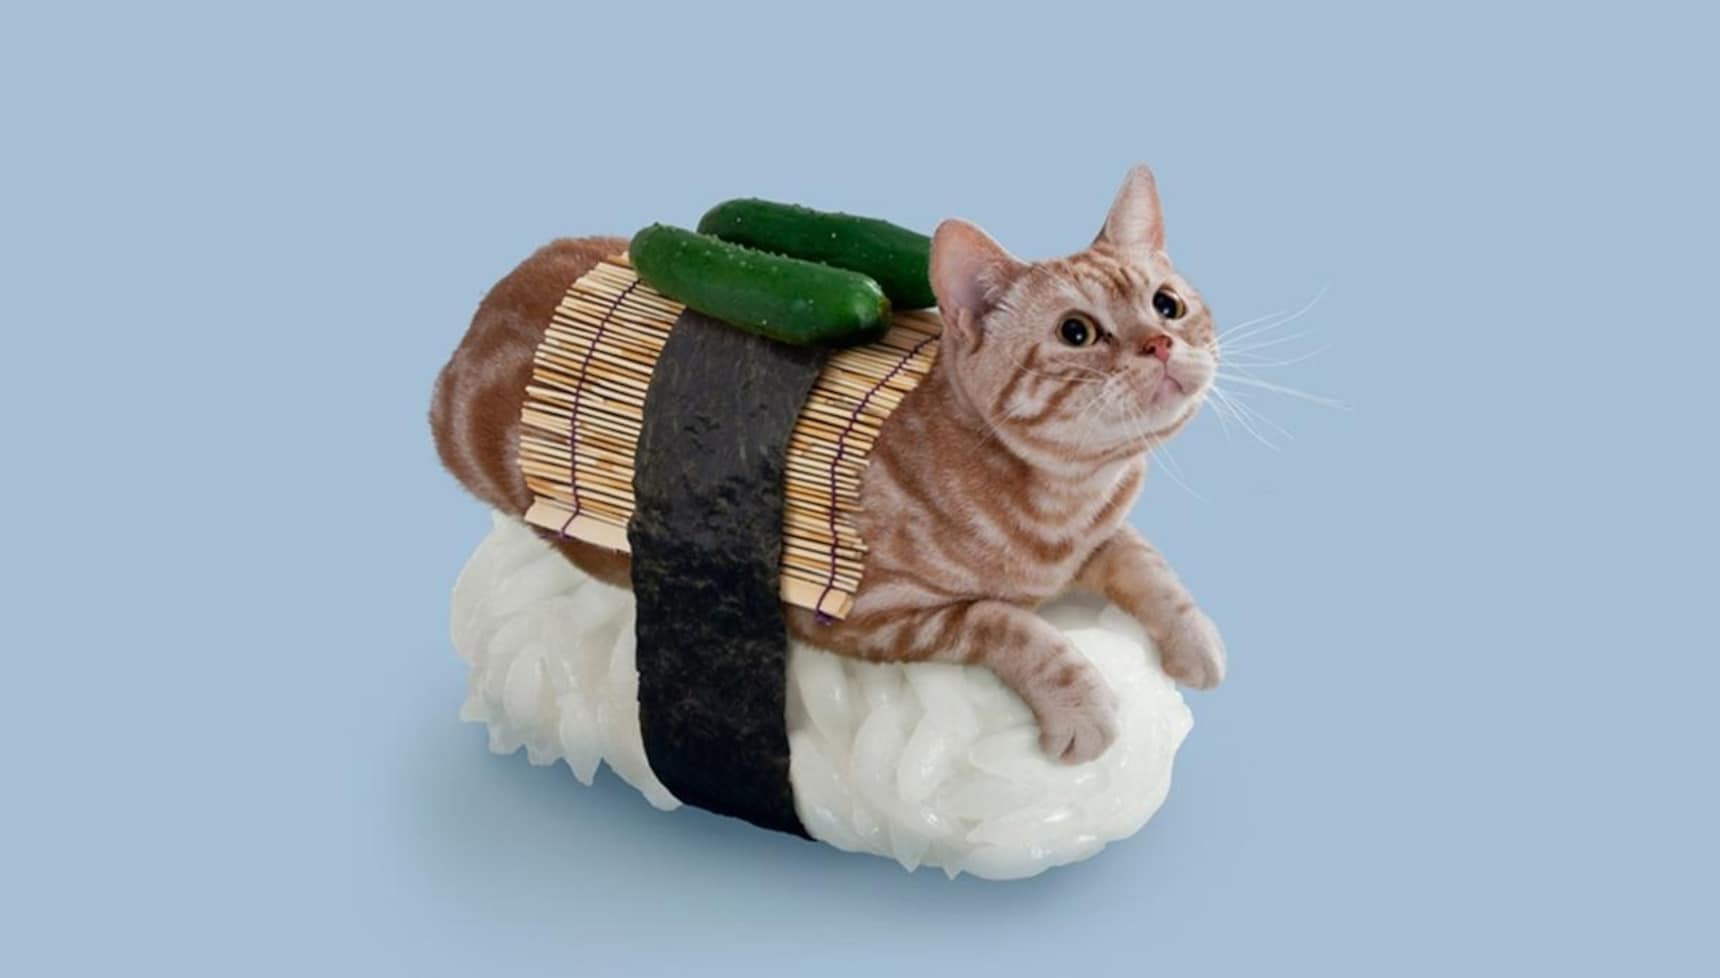 可爱但有点怪的猫寿司